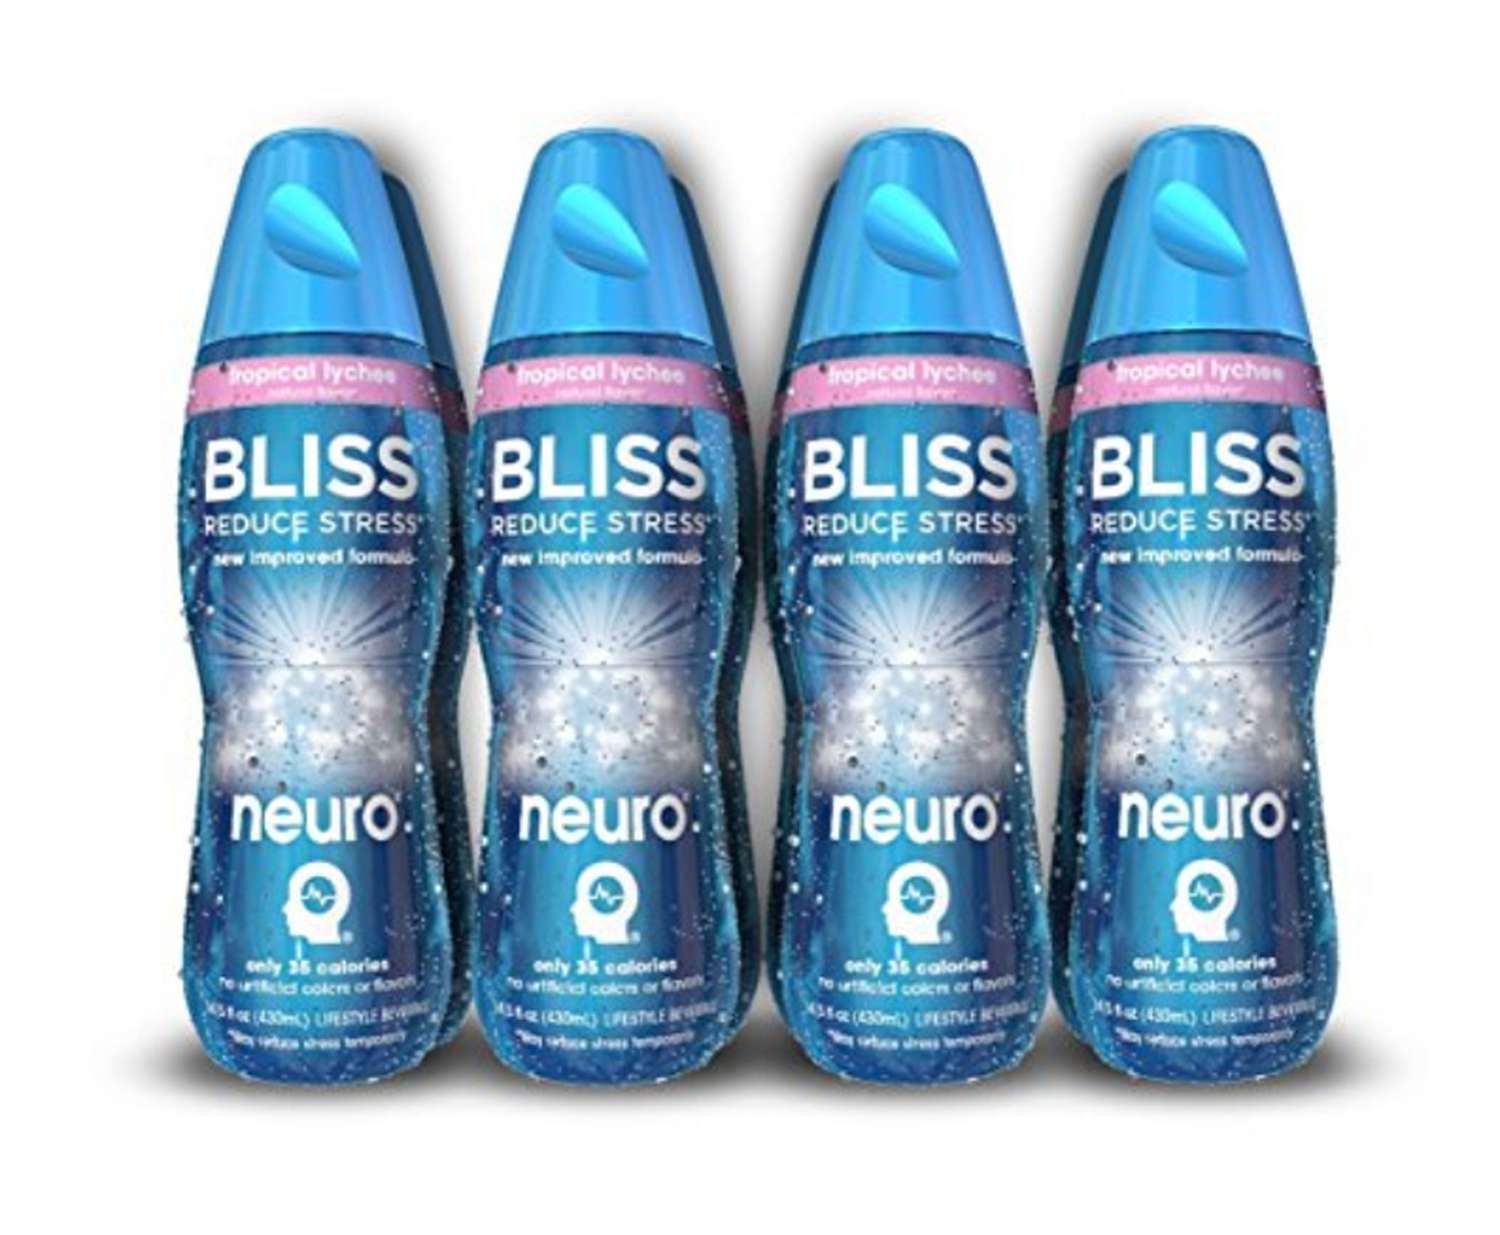 Neuro bliss wellness guideCredit: Amazon